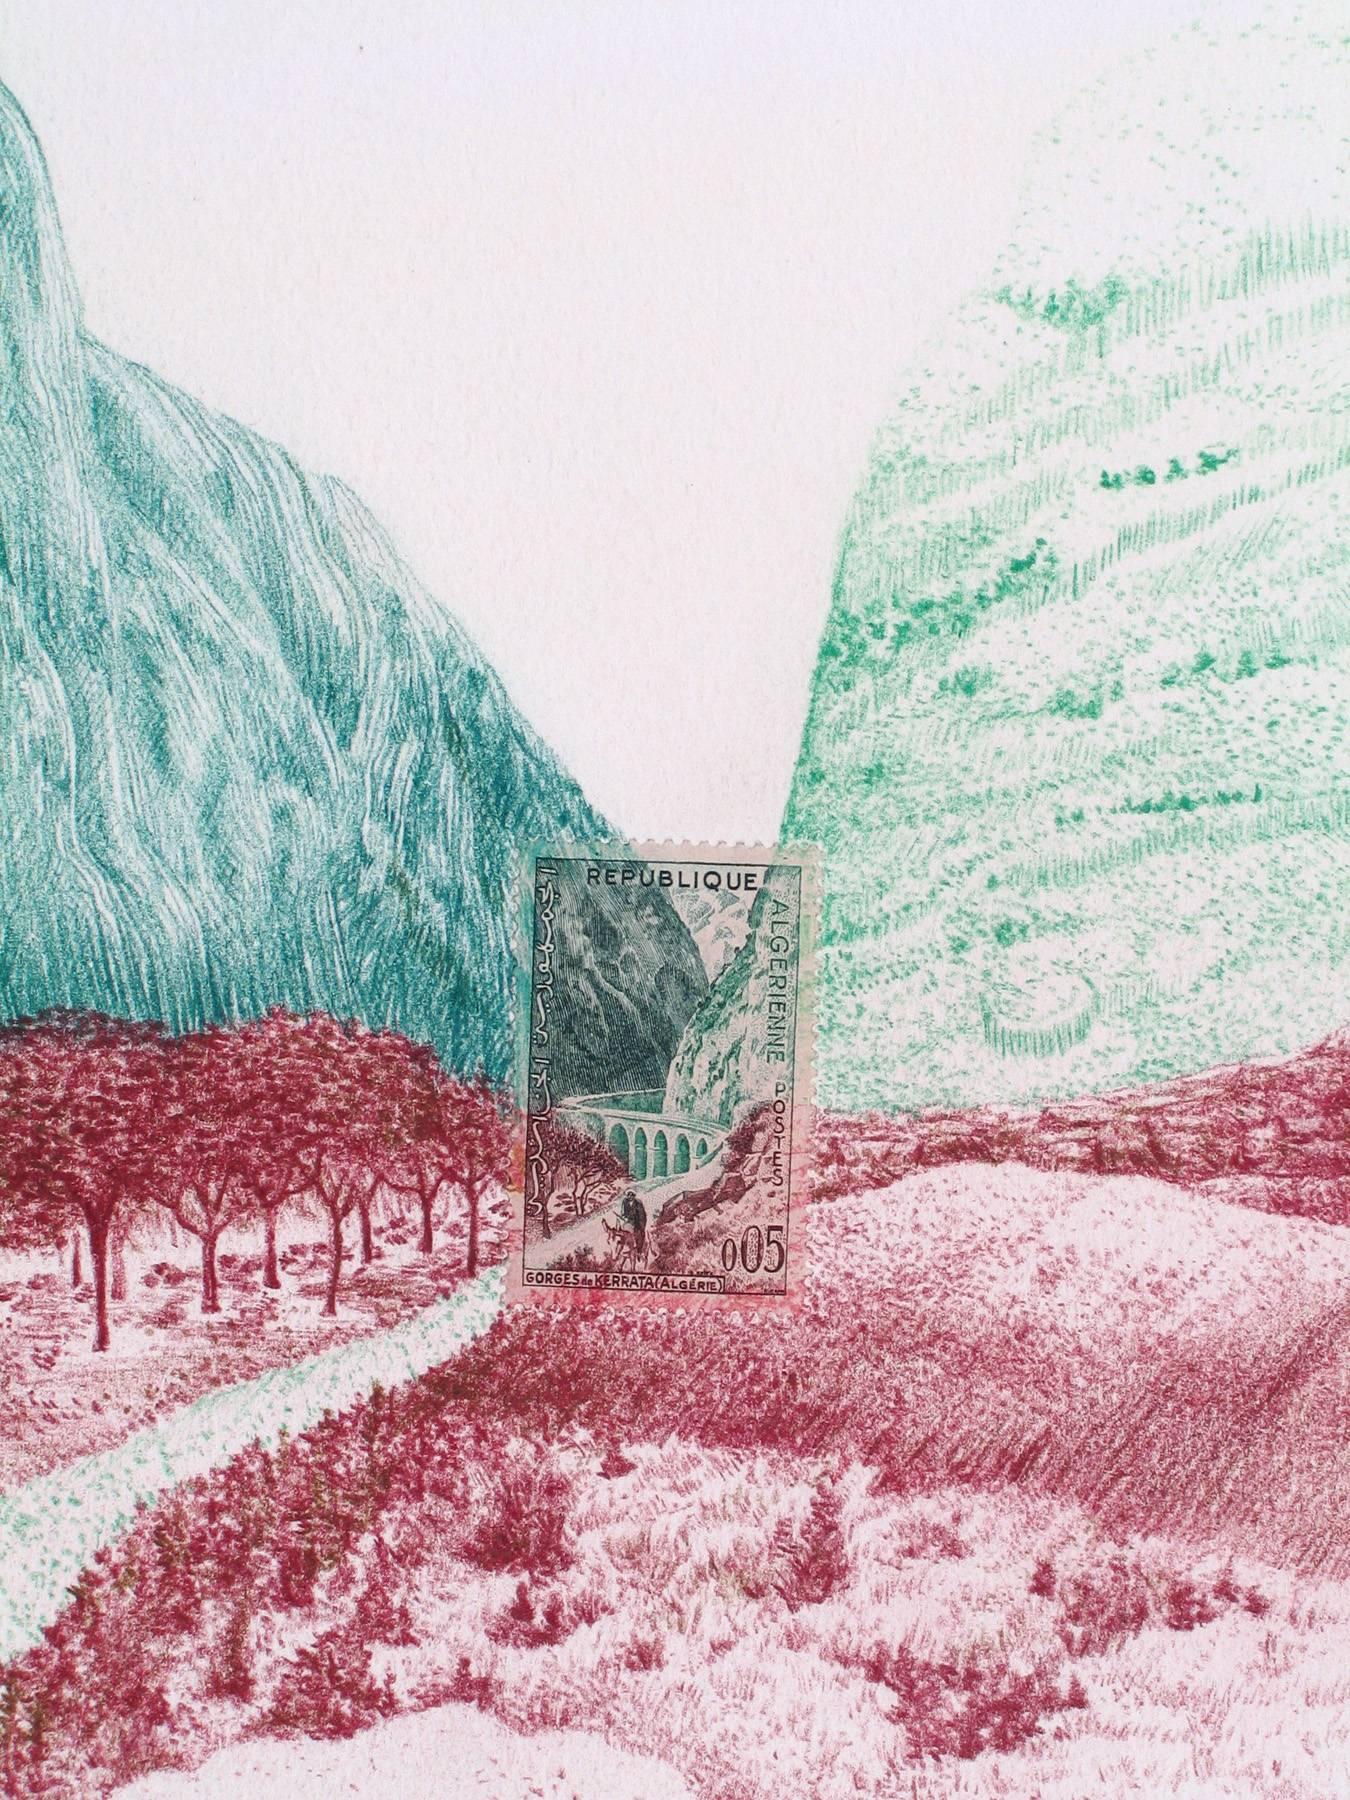 Landscape Art Andrea Moreau - Algénie, Pass de montagne : dessin détaillé au crayon en couleur d'un paysage et d'un timbre